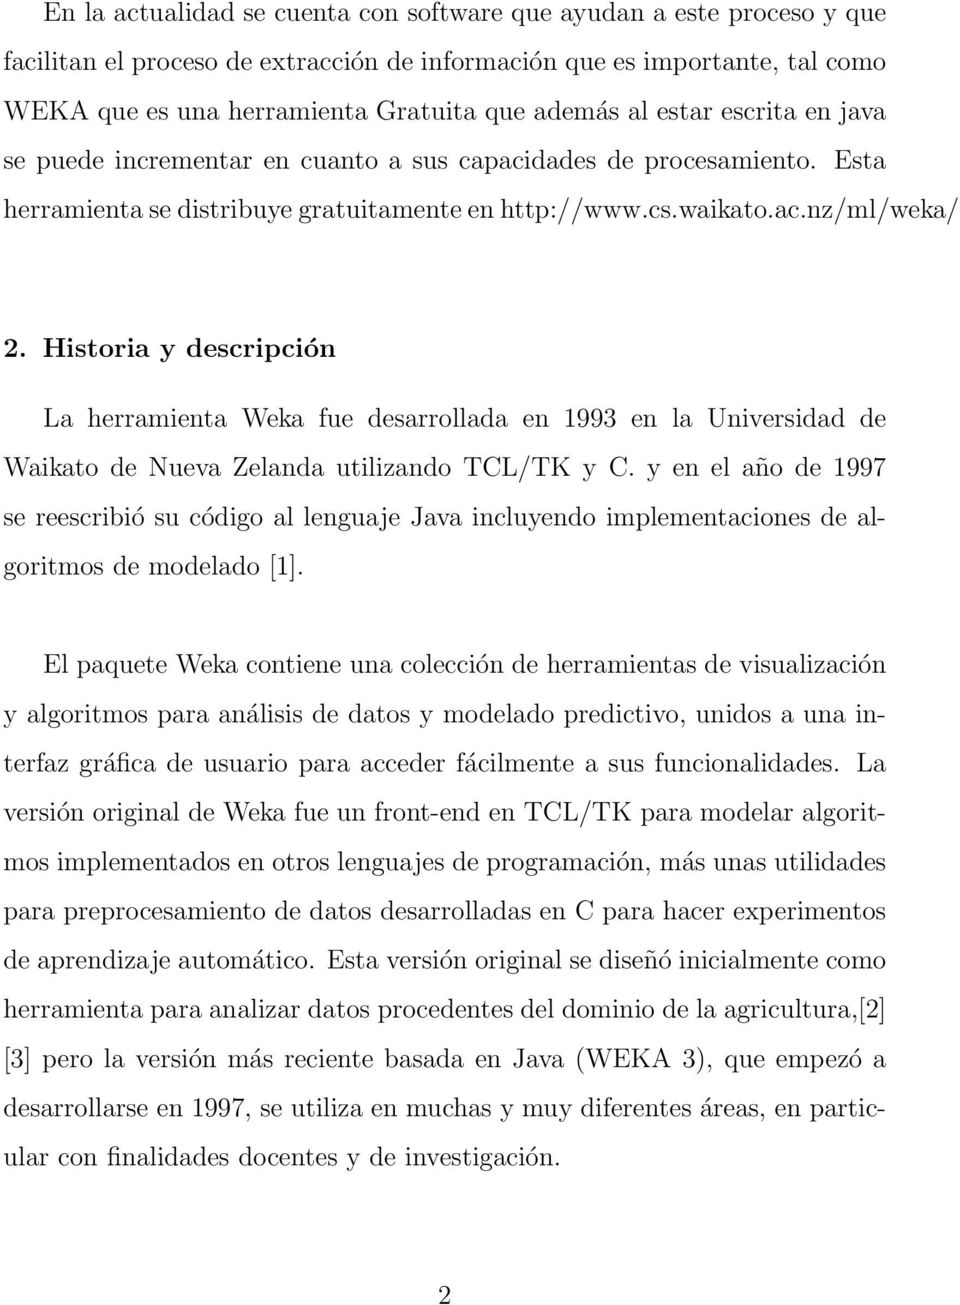 Historia y descripción La herramienta Weka fue desarrollada en 1993 en la Universidad de Waikato de Nueva Zelanda utilizando TCL/TK y C.